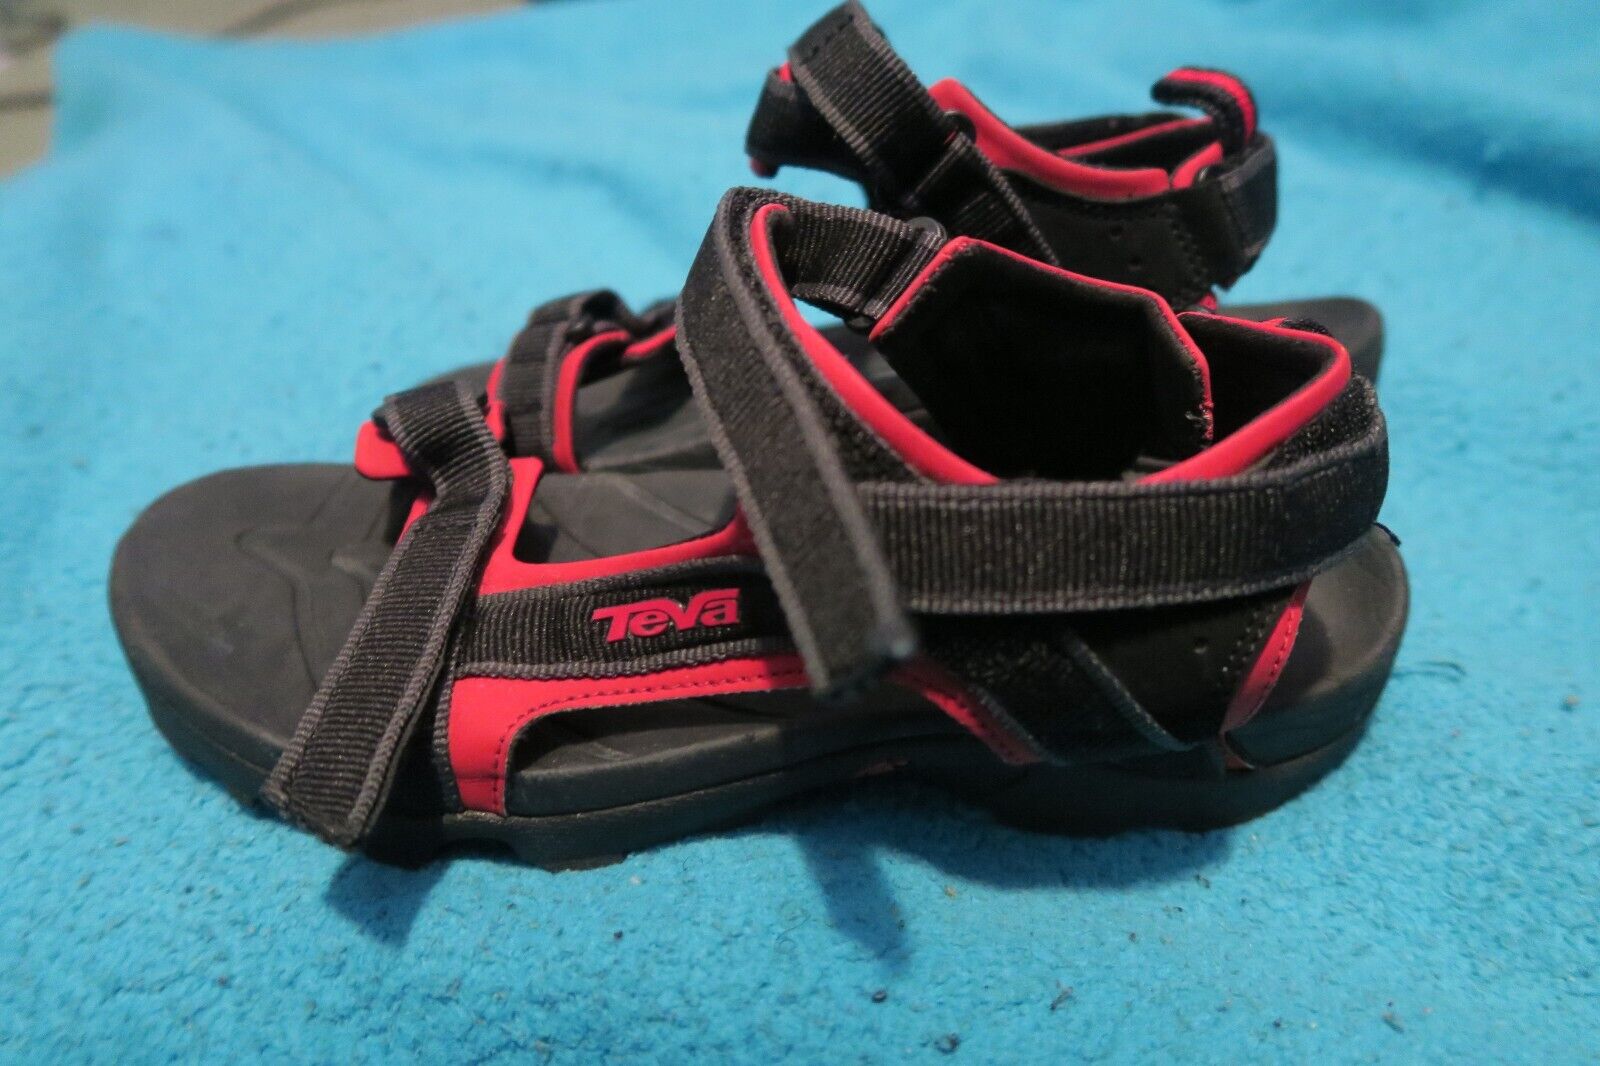 Teva Tanza Trail Hiking Sport Sandals Red Black Big Kid Boys Size Junior 6